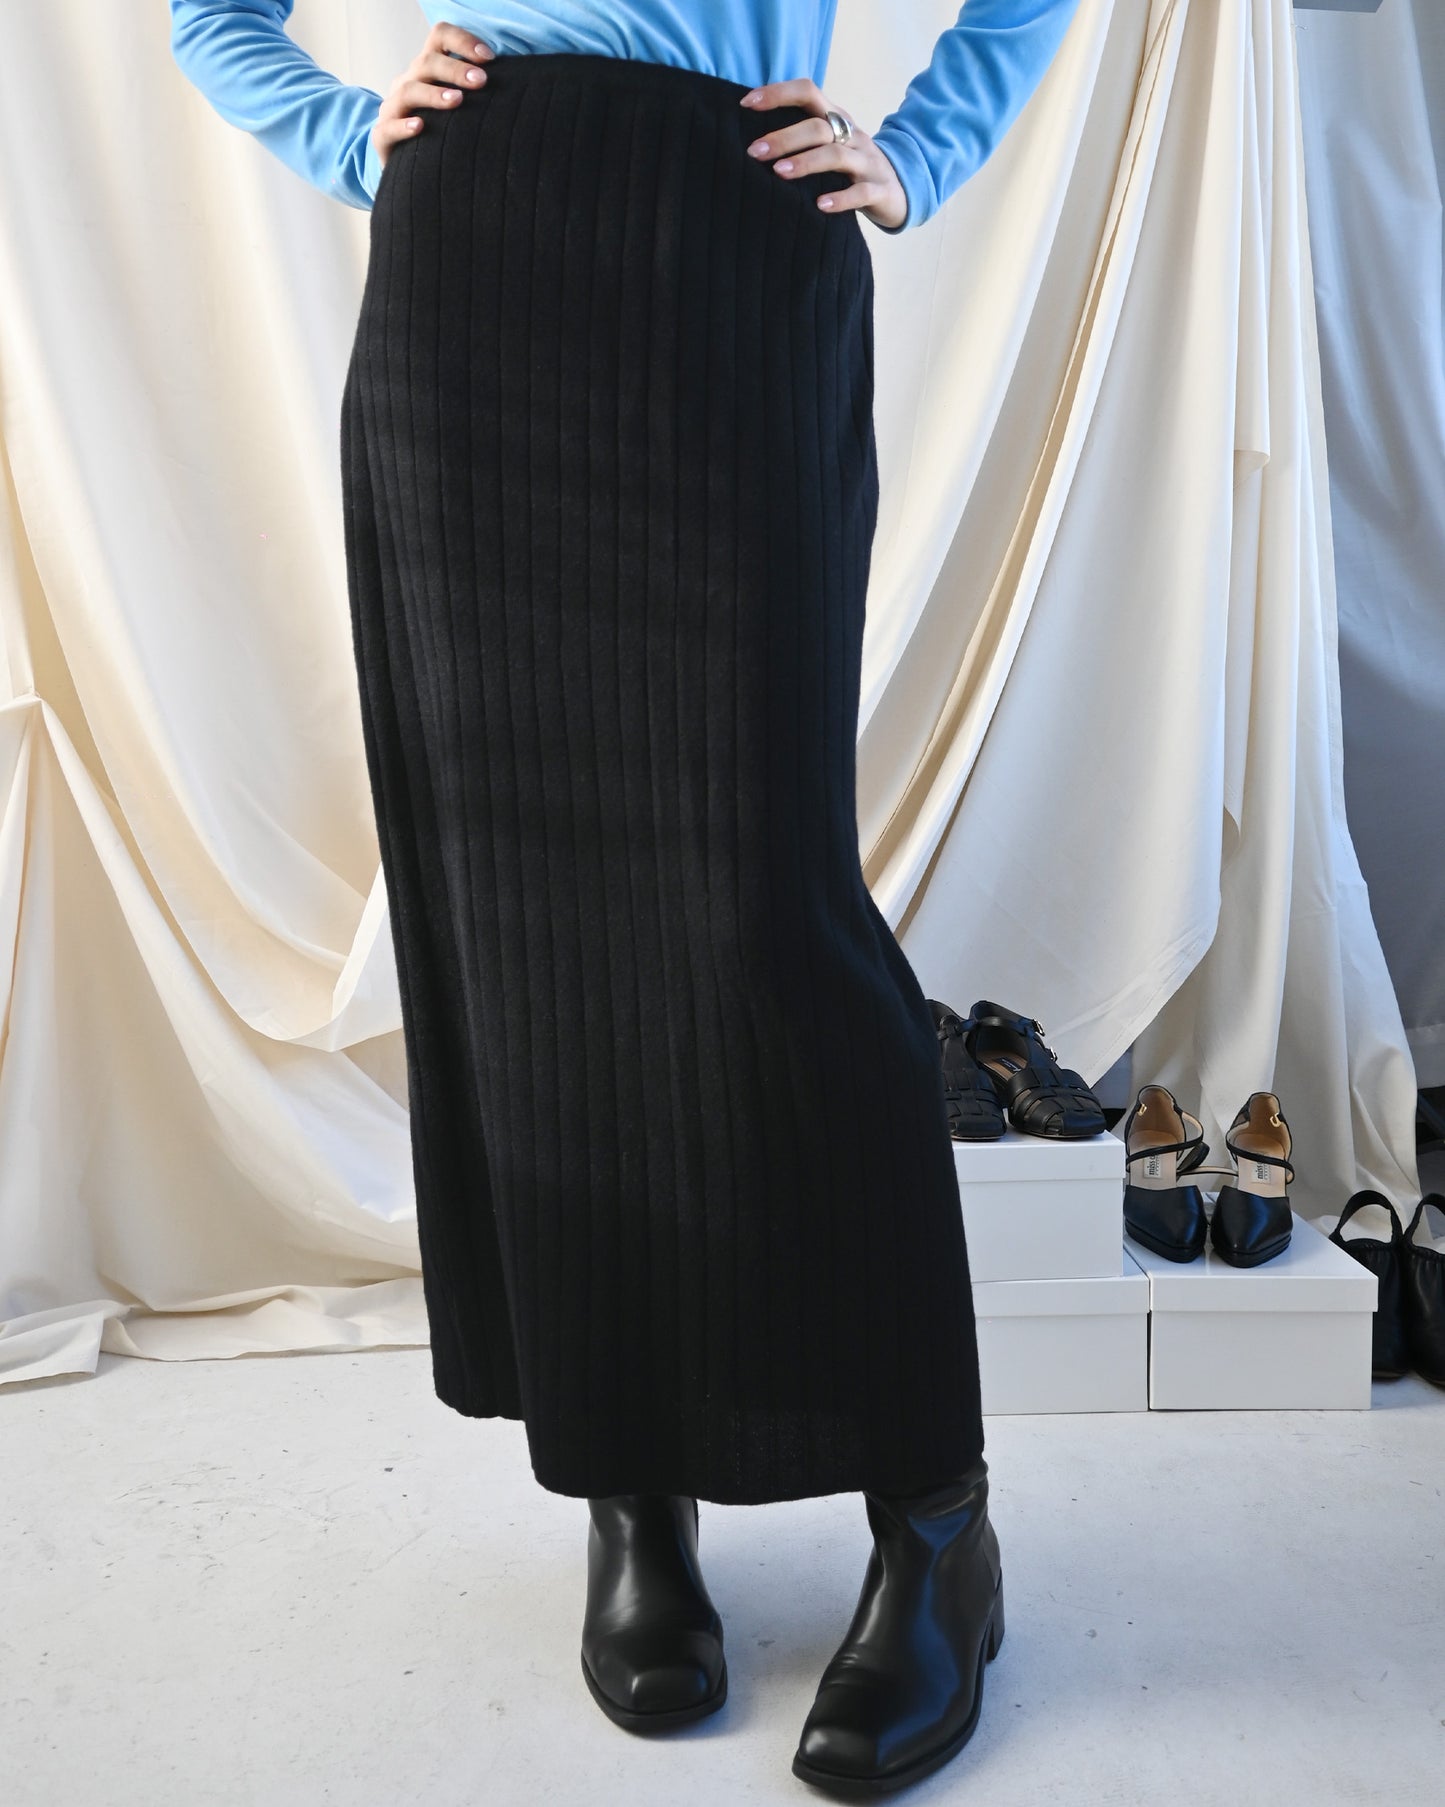 Black Knit Long Skirt